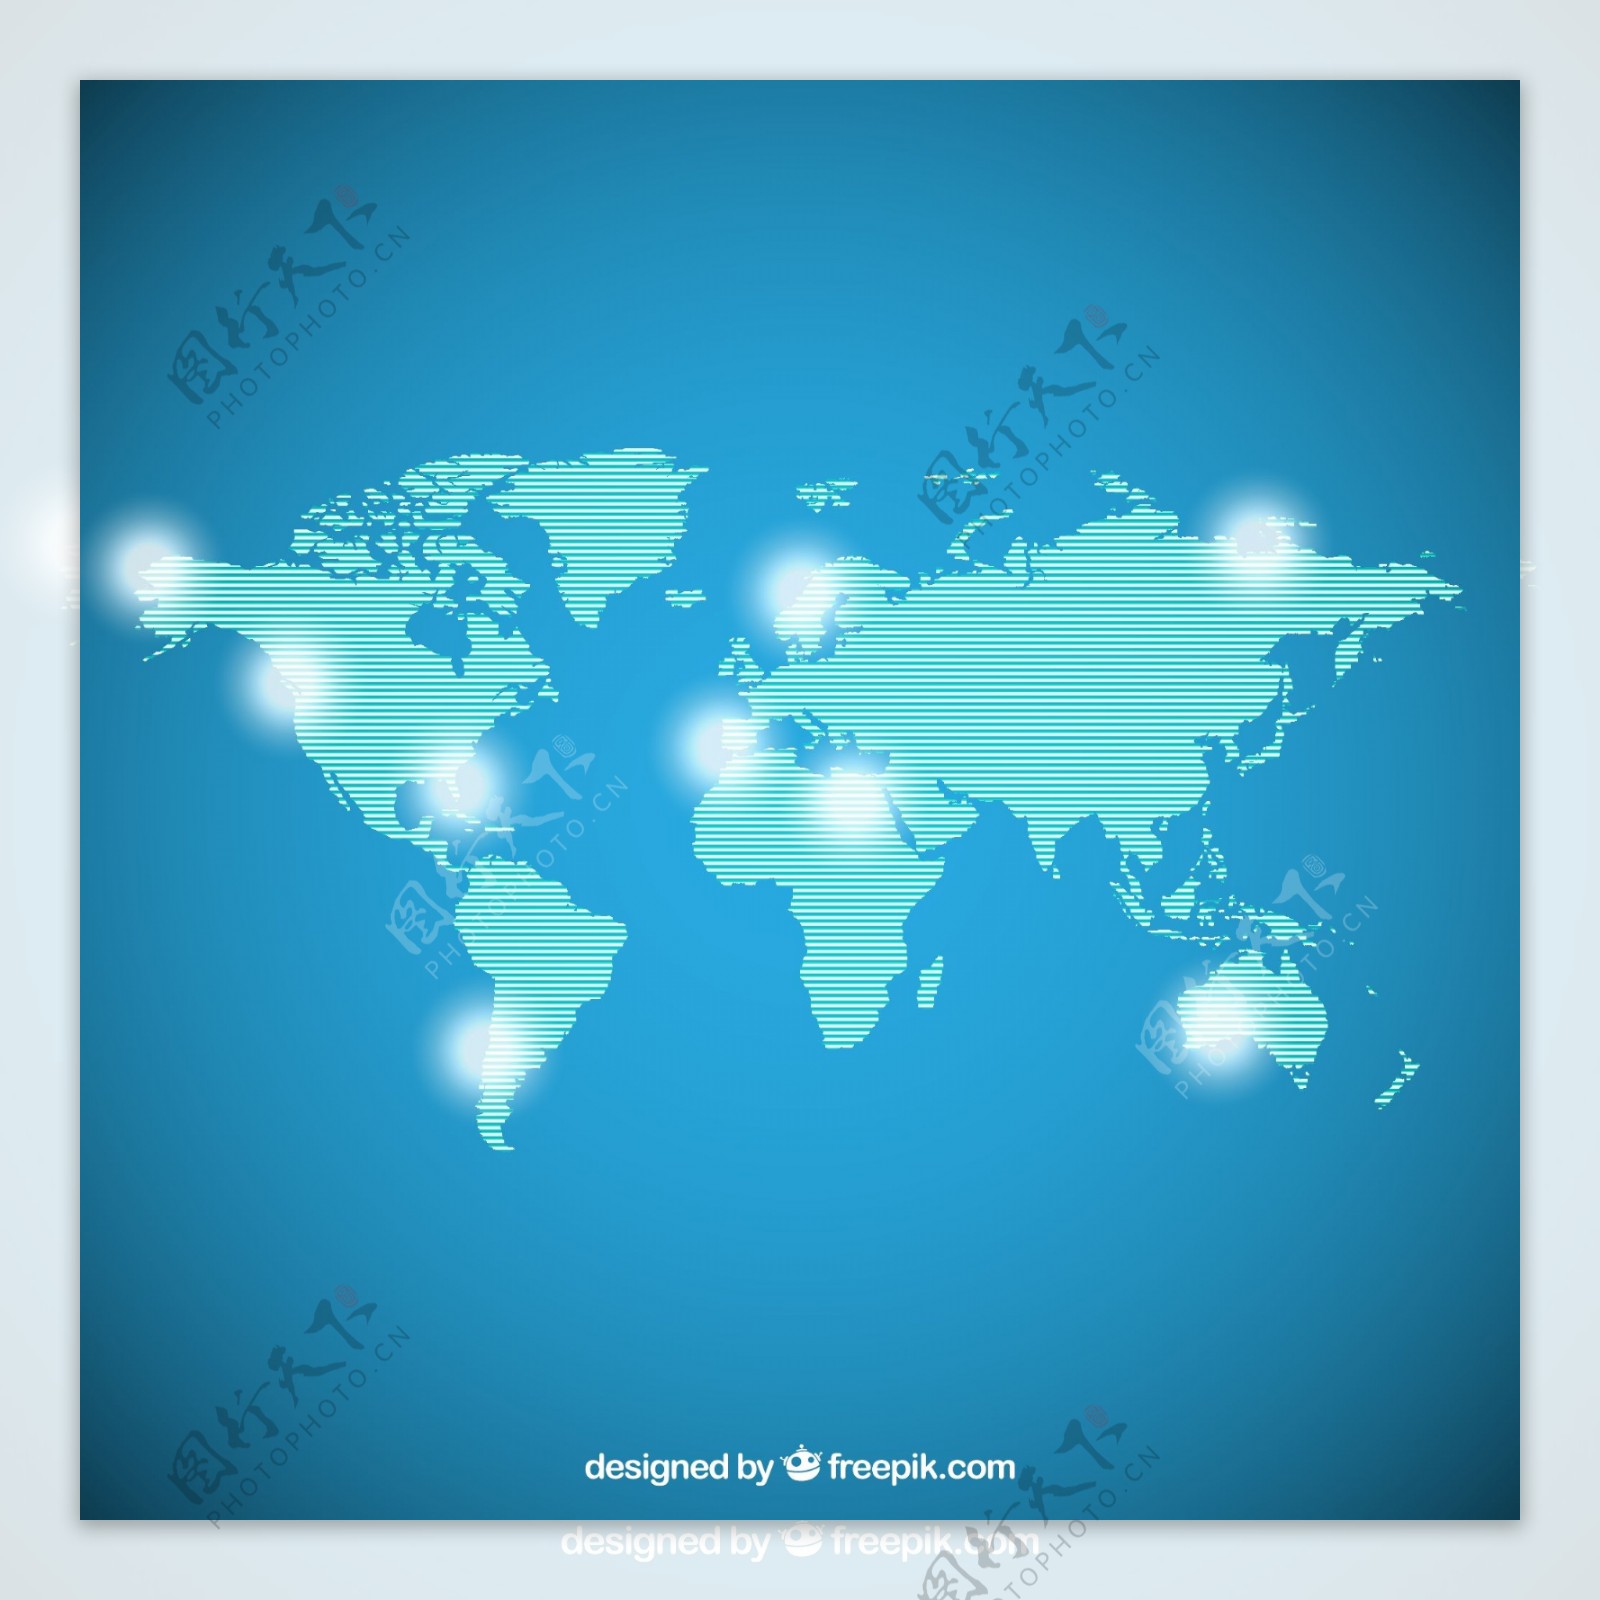 蓝色条纹世界地图矢量素材